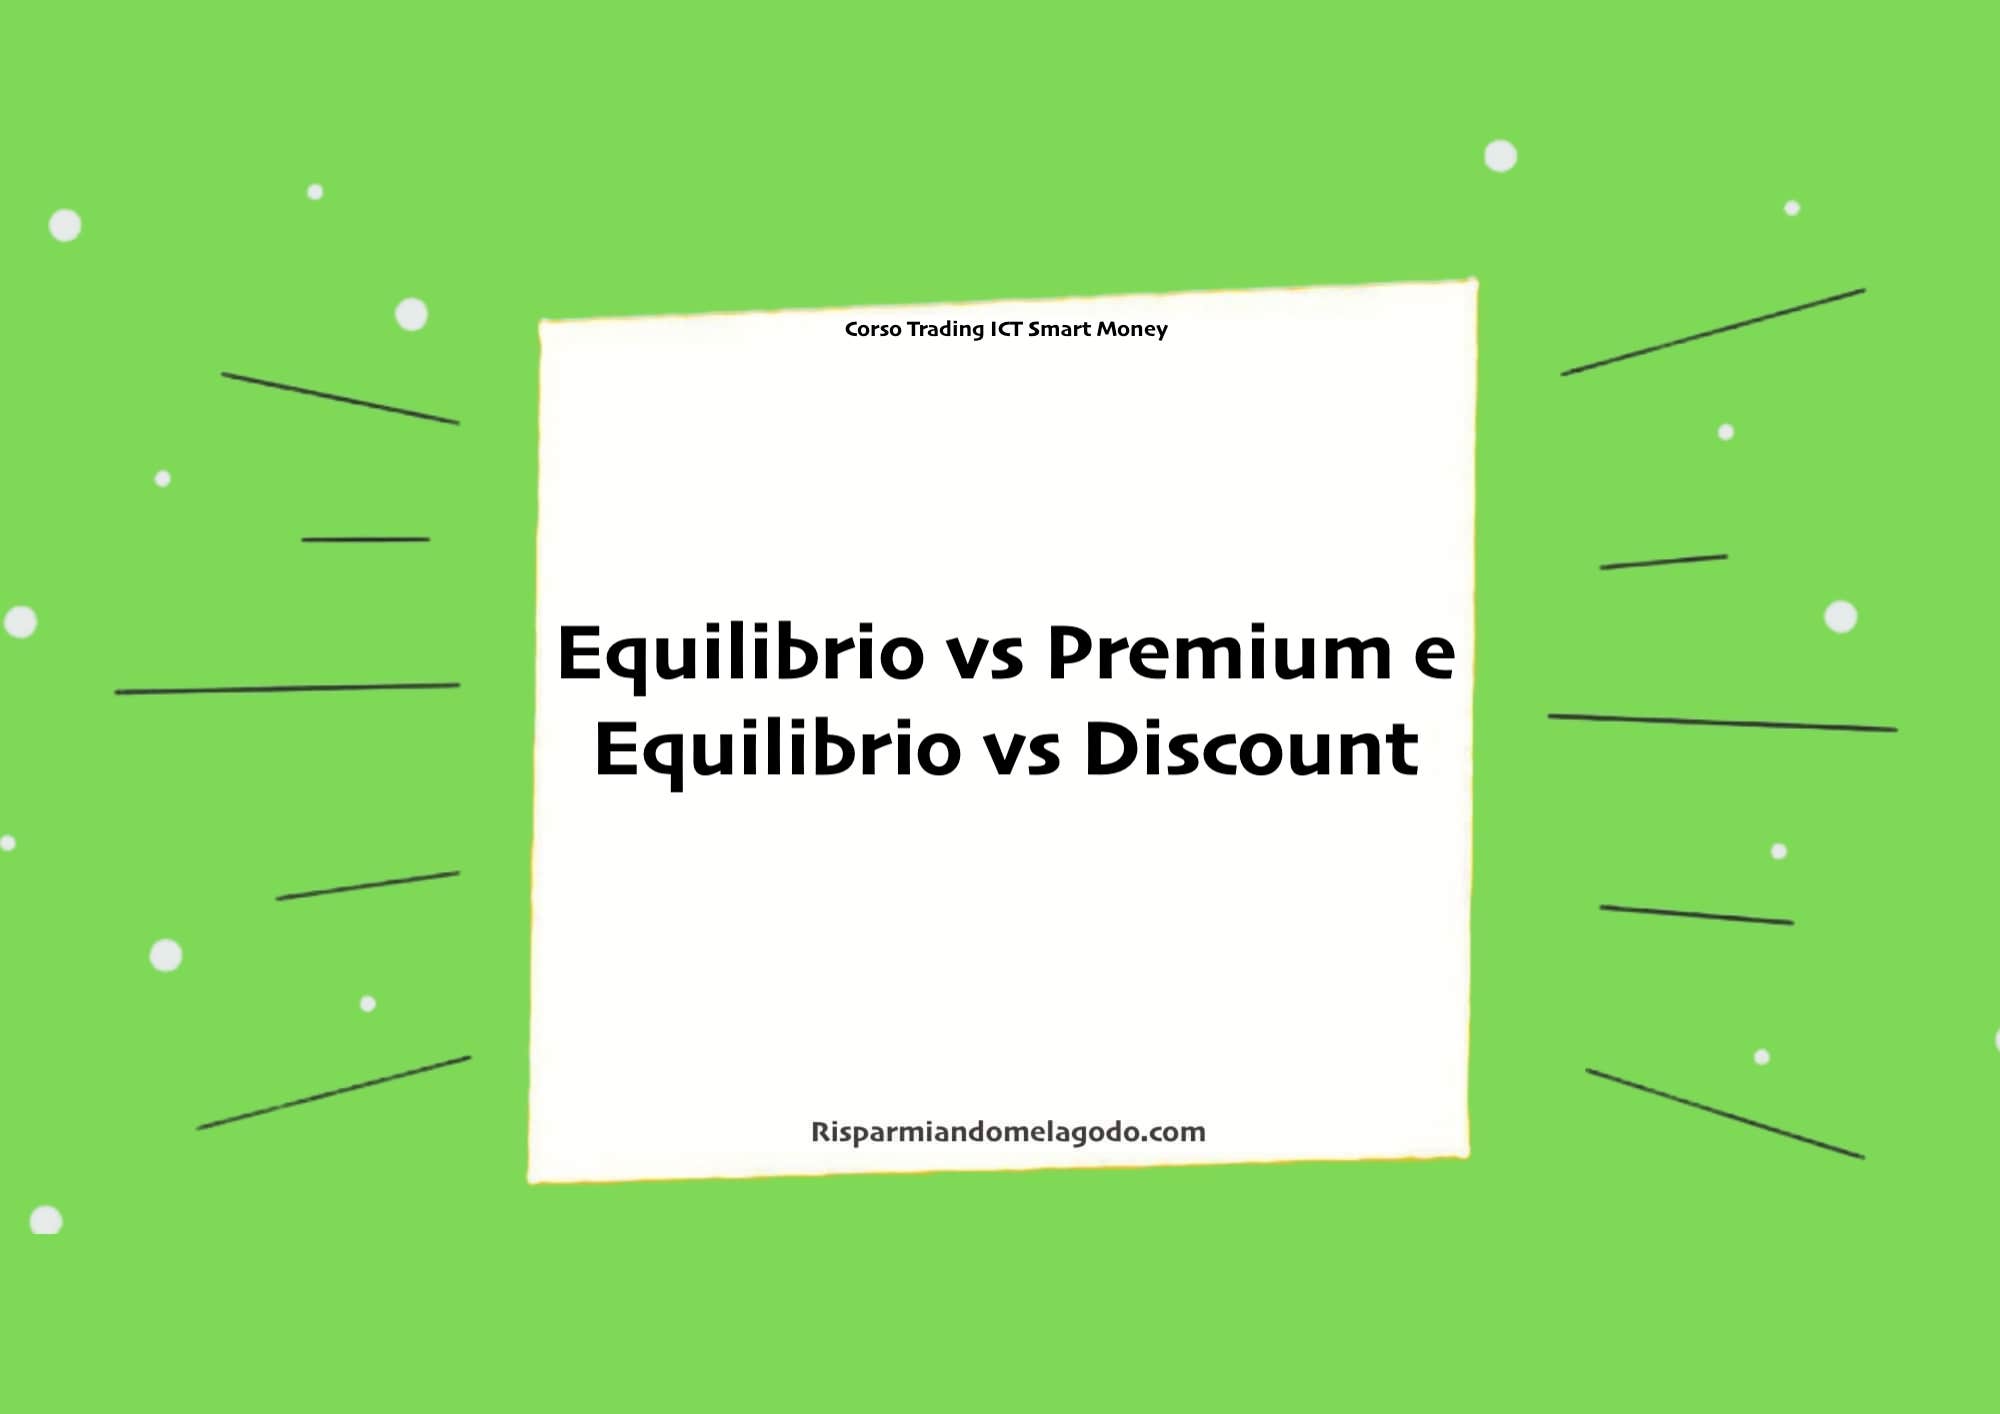 Equilibrio vs Premium e Equilibrio vs Discount